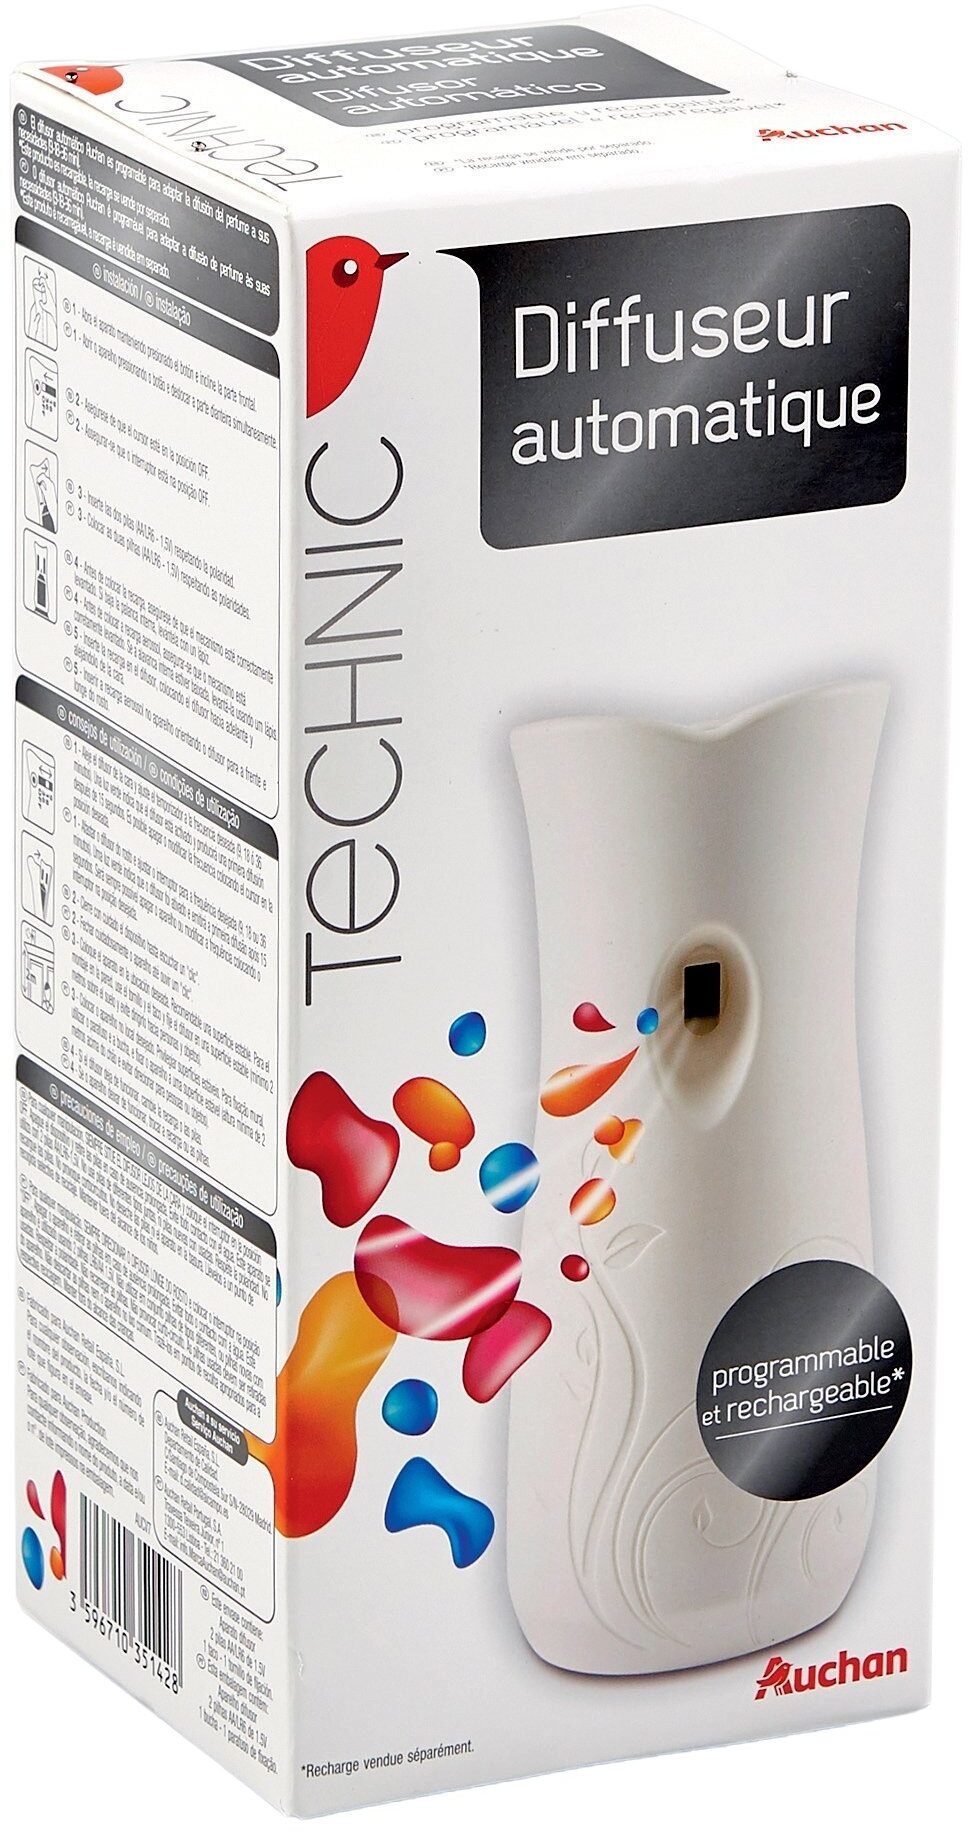 Auchan diffuseur de parfumes automatique x1 - Product - fr